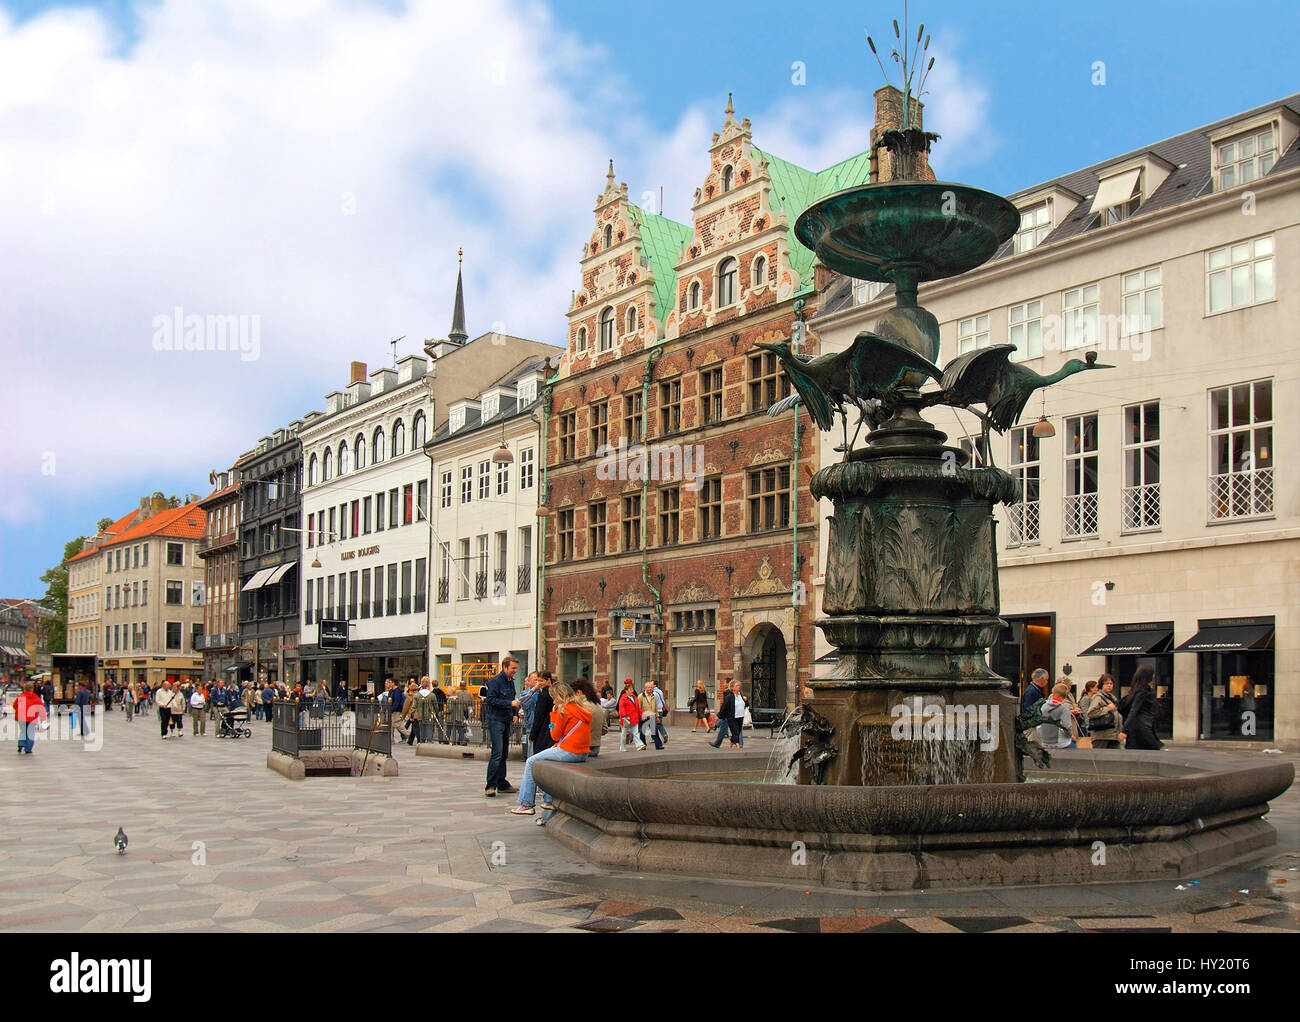 Imagen de la Hojbro Place en el centro de la ciudad de Kopenhagen, Dinamarca. Foto de stock